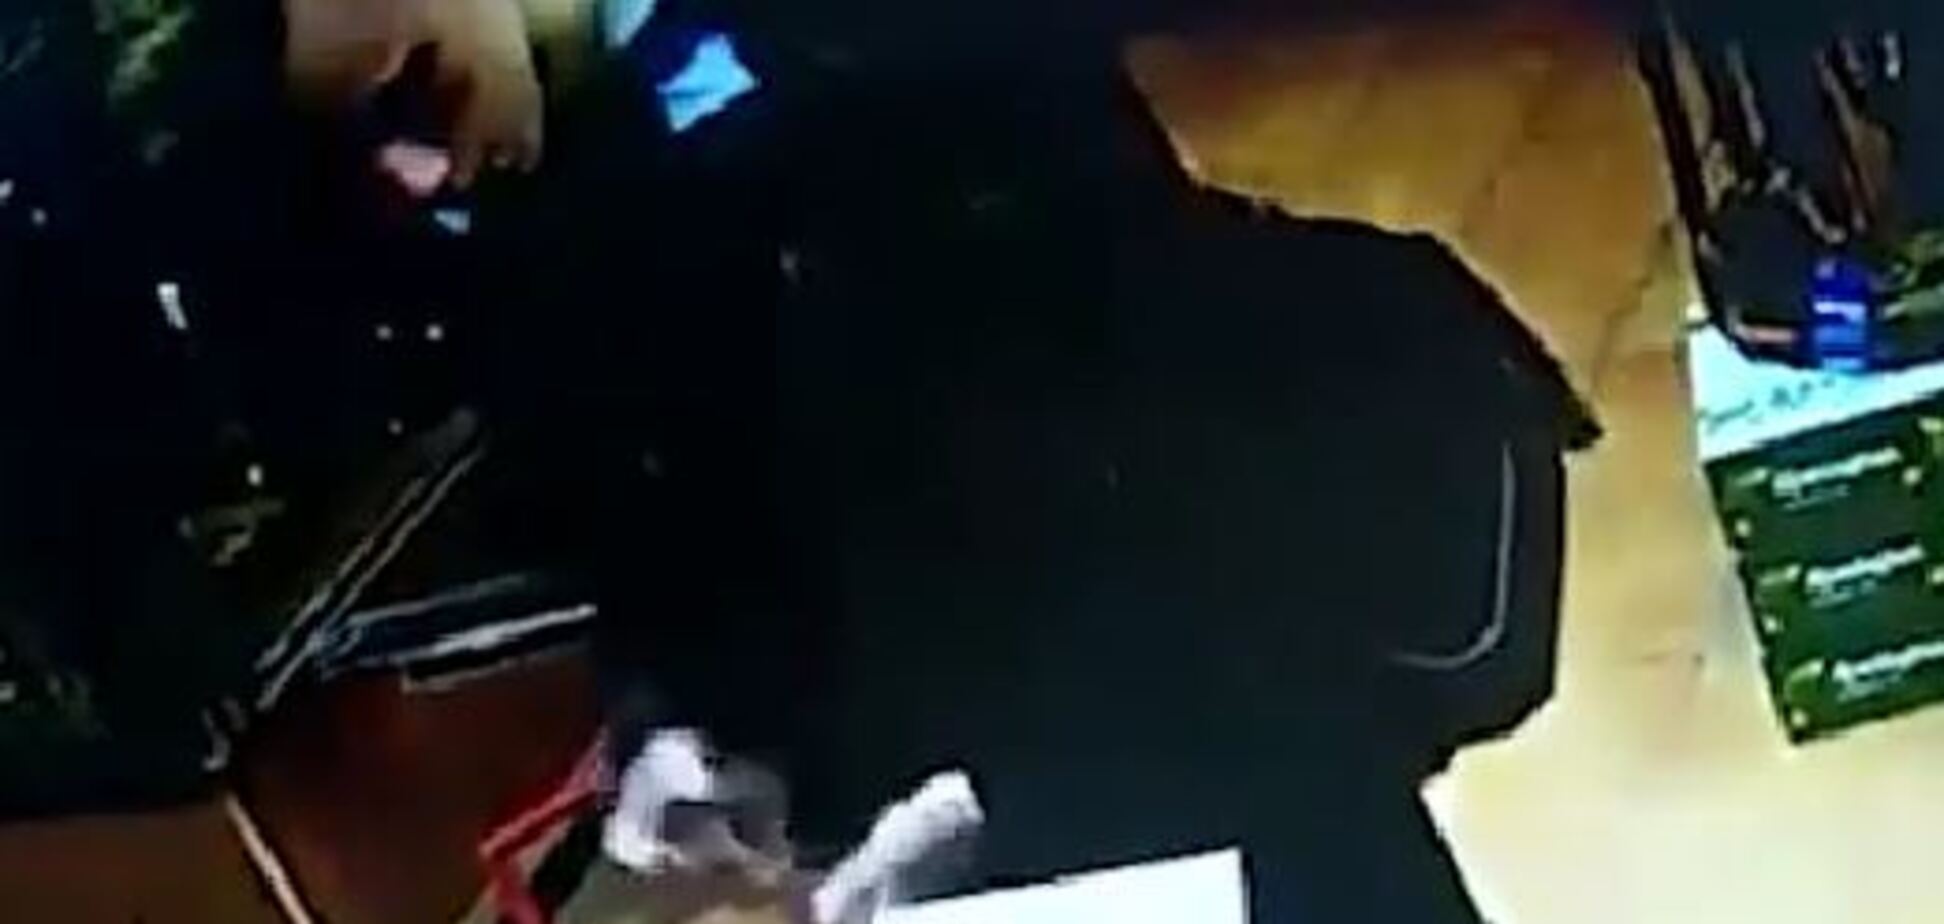 Опубликовано видео с керченским стрелком перед массовым убийством